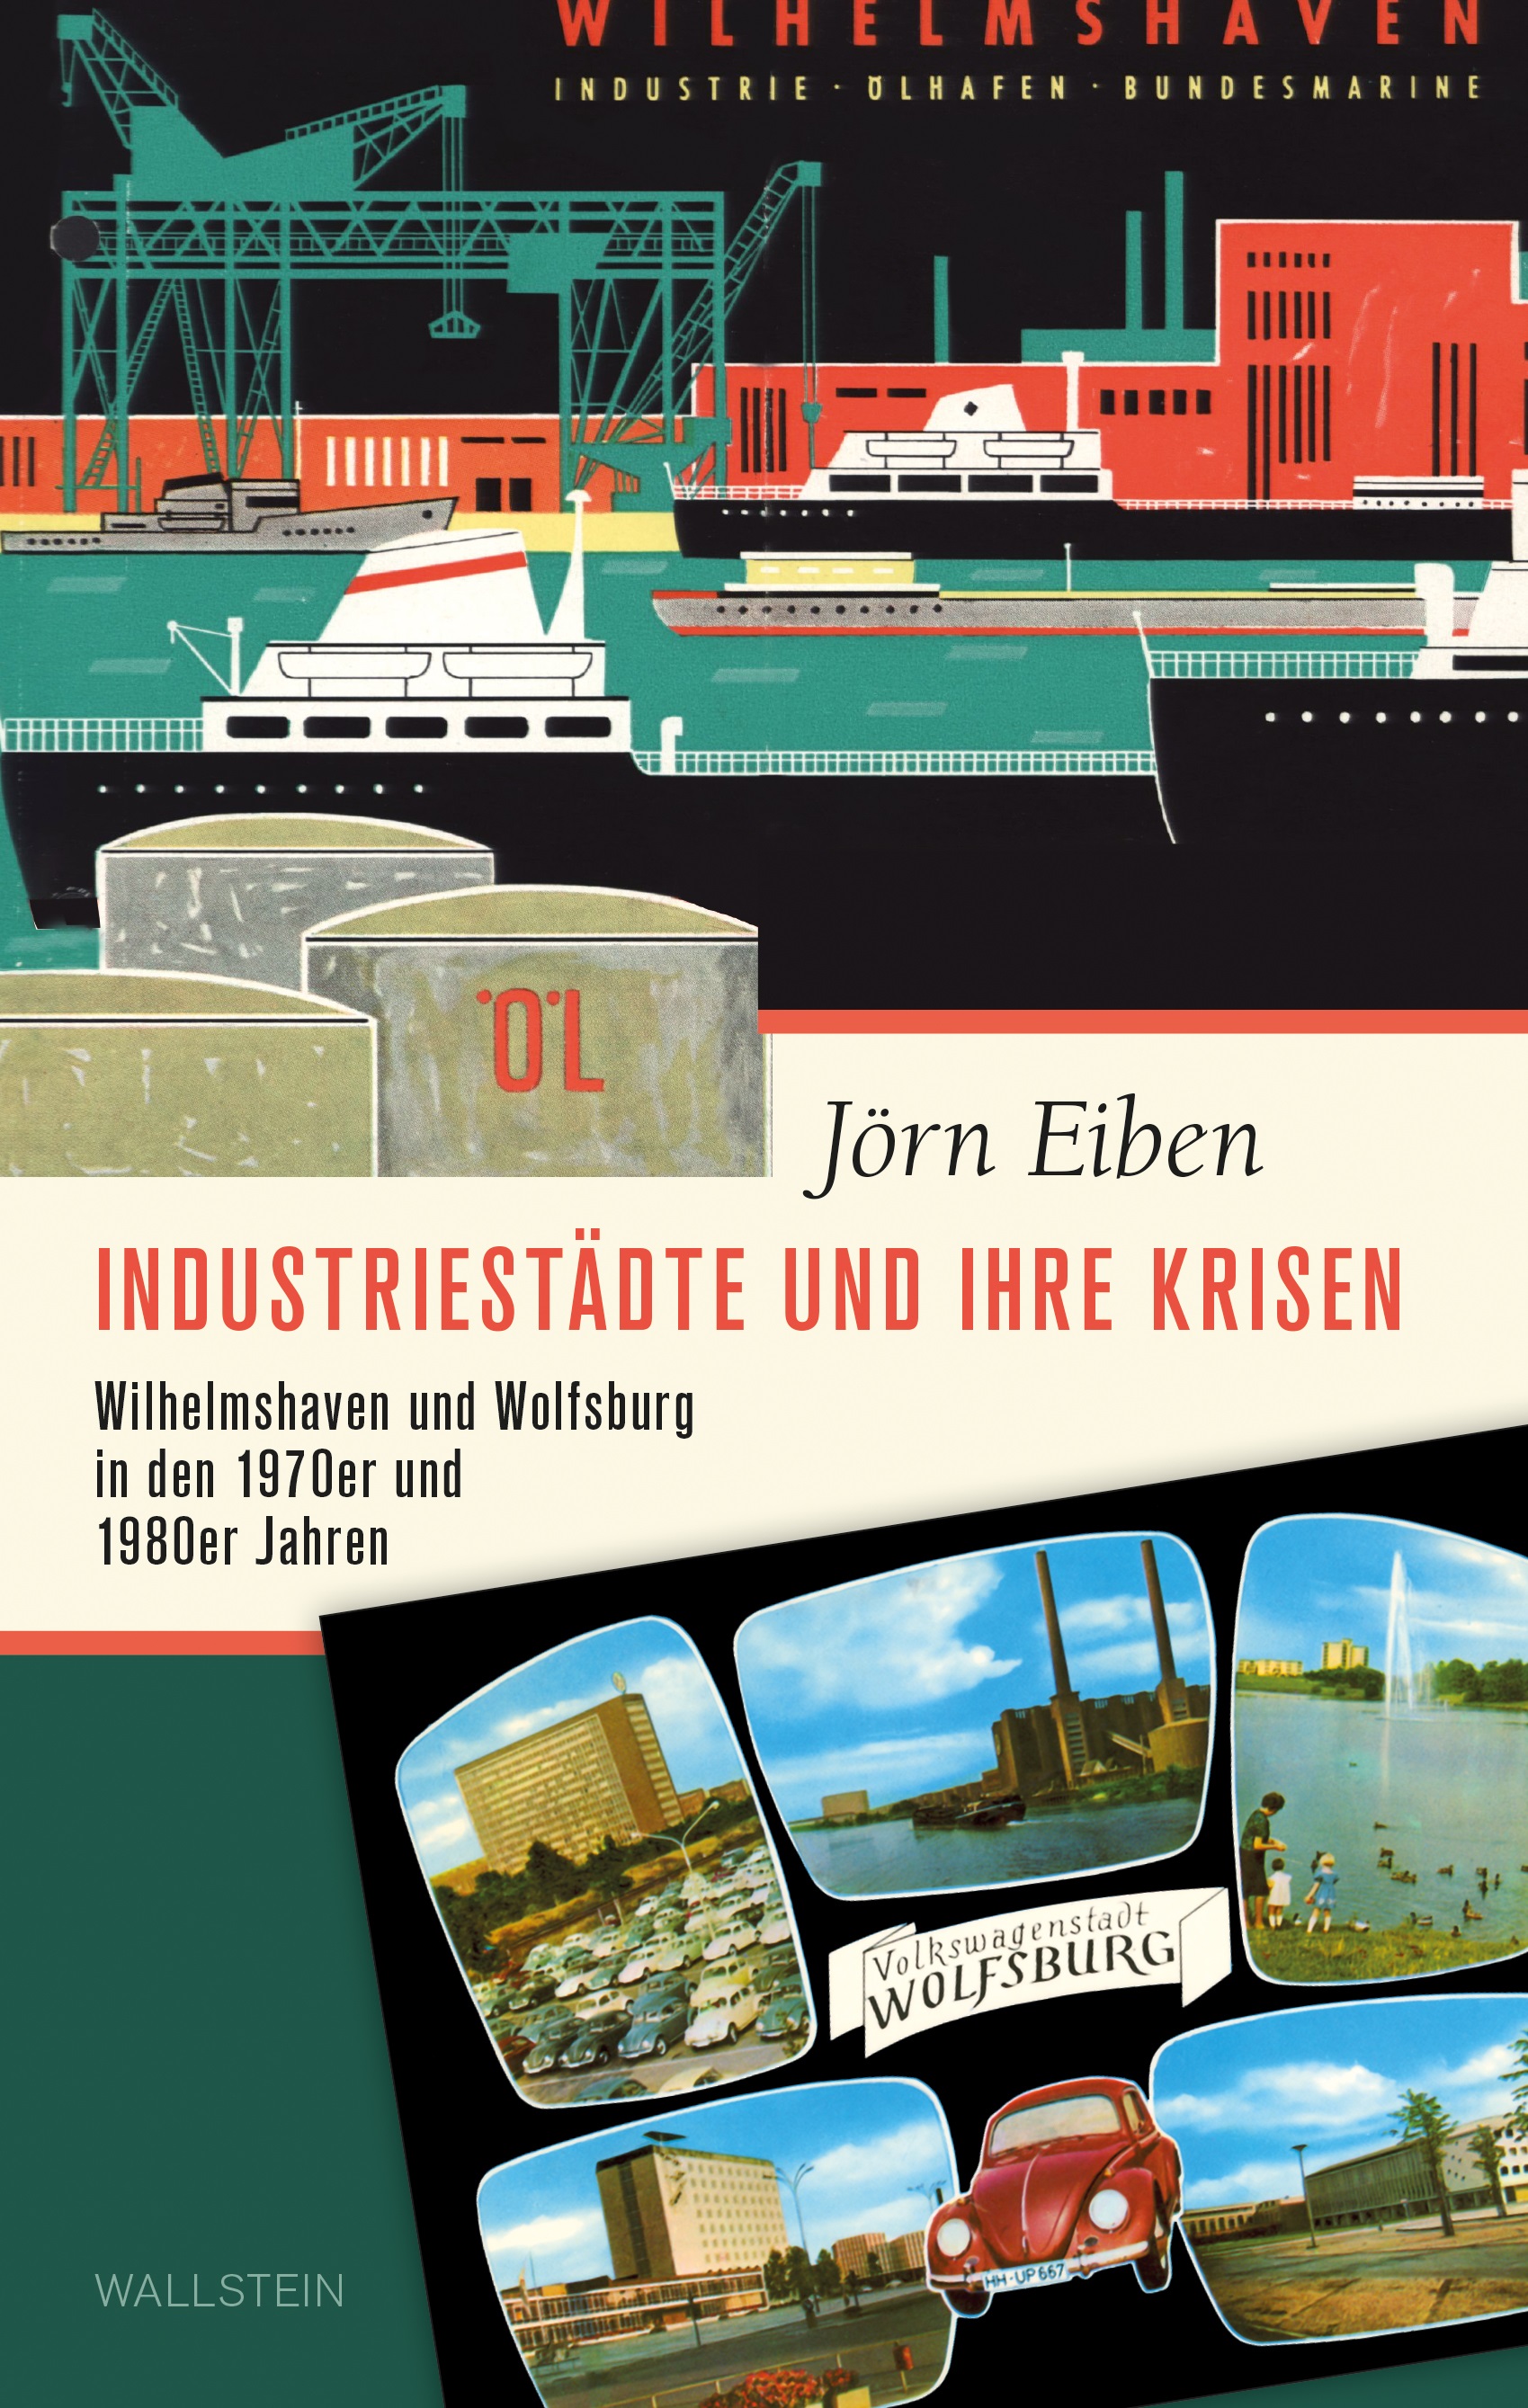 Title page of the book "Industriestädte und ihre Krisen. Wilhelmshaven and Wolfsburg in the 1970s and 1980s"